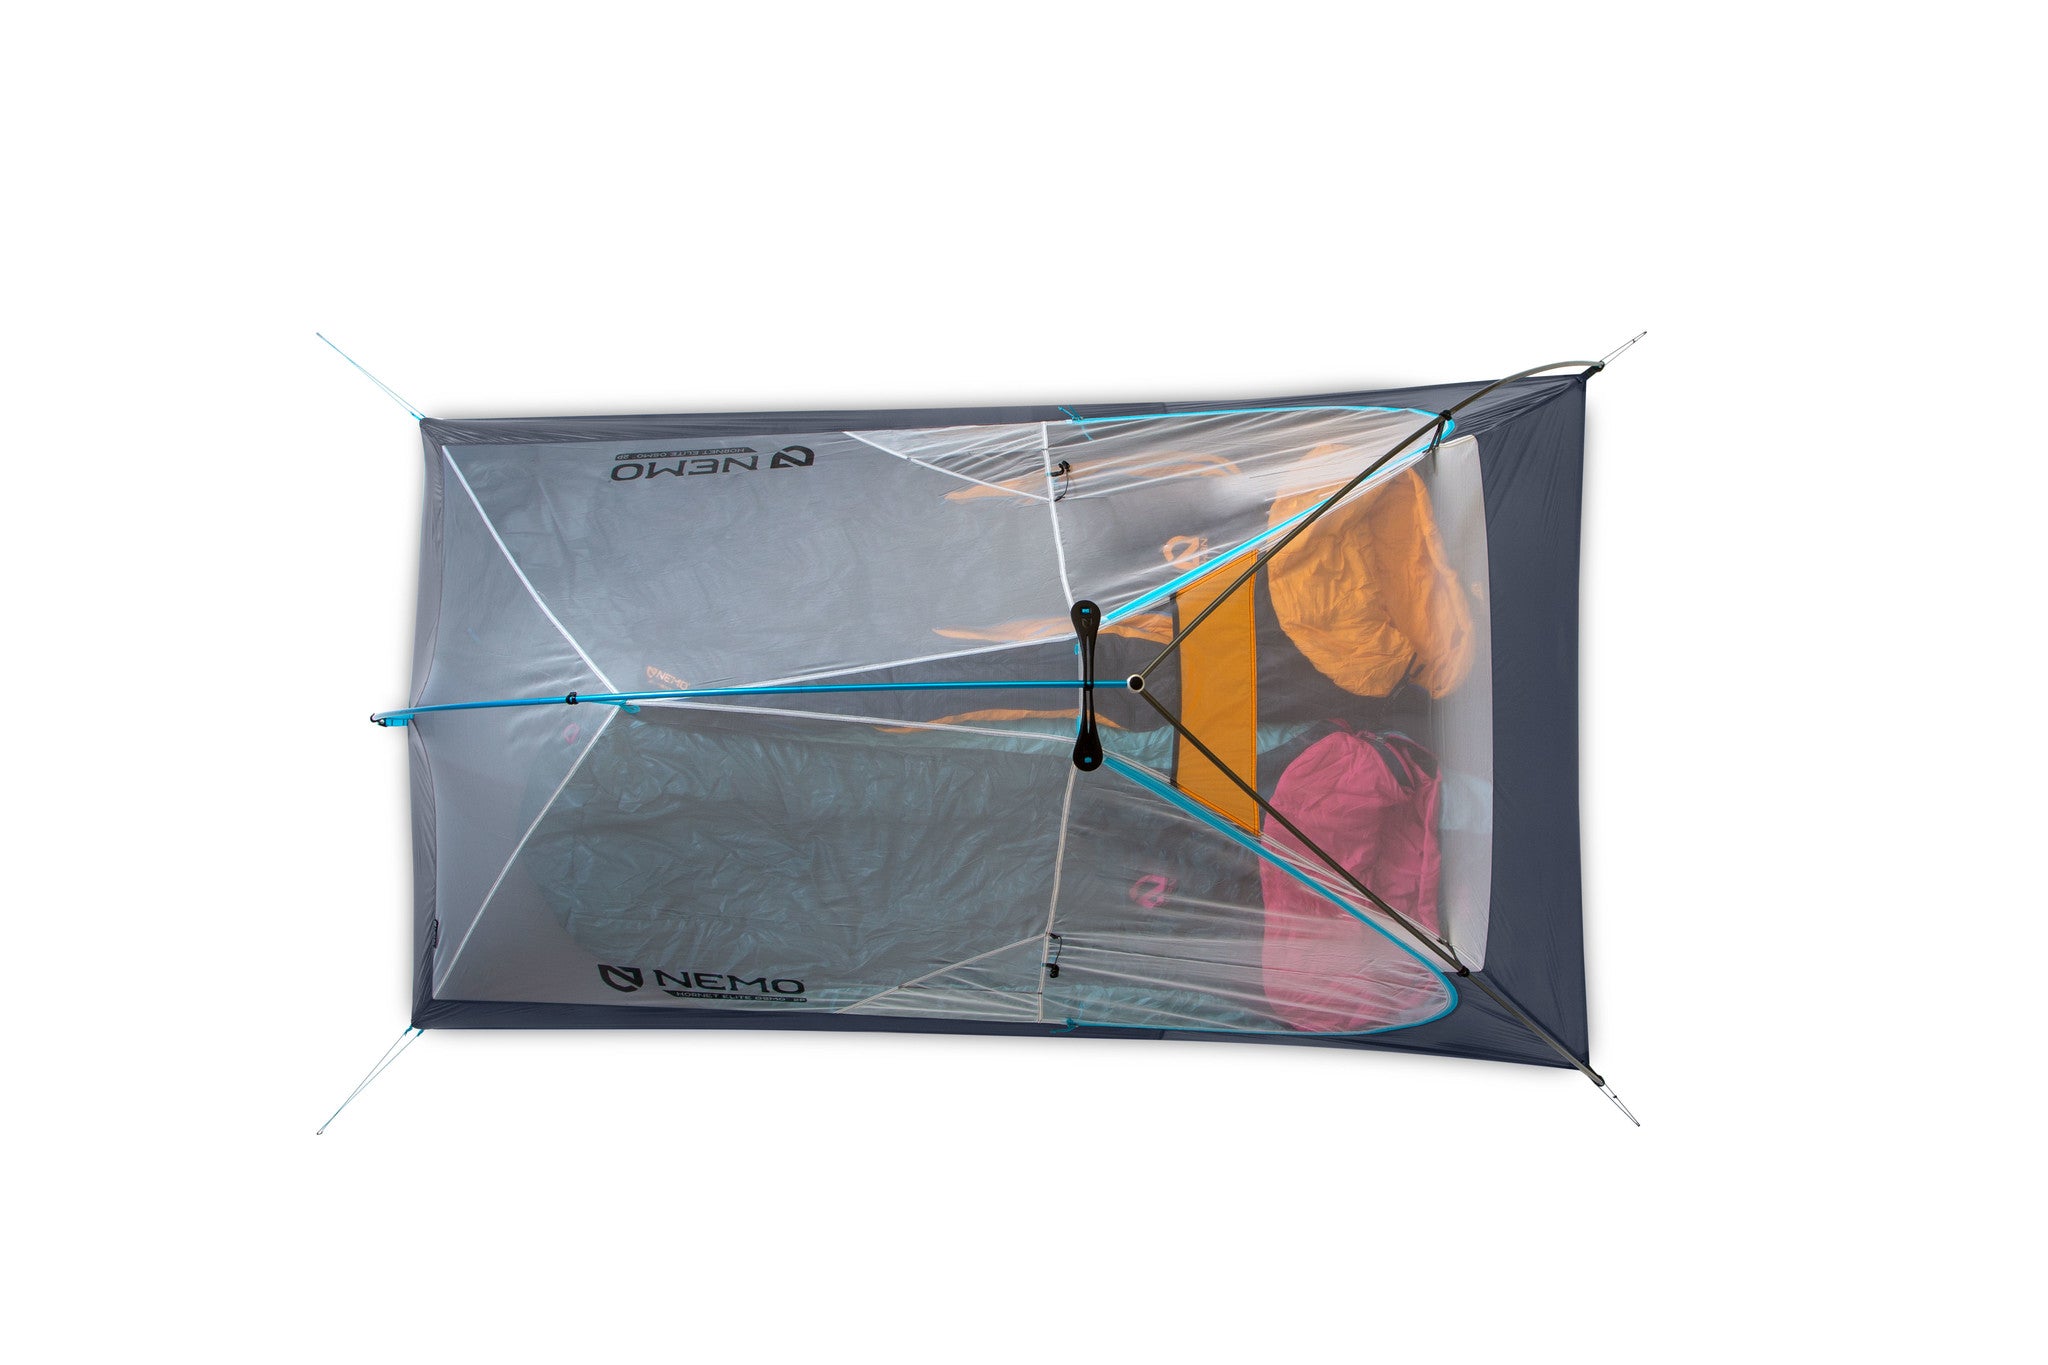 Nemo - Hornet Elite OSMO 2P Ultralight Backpacking Tent